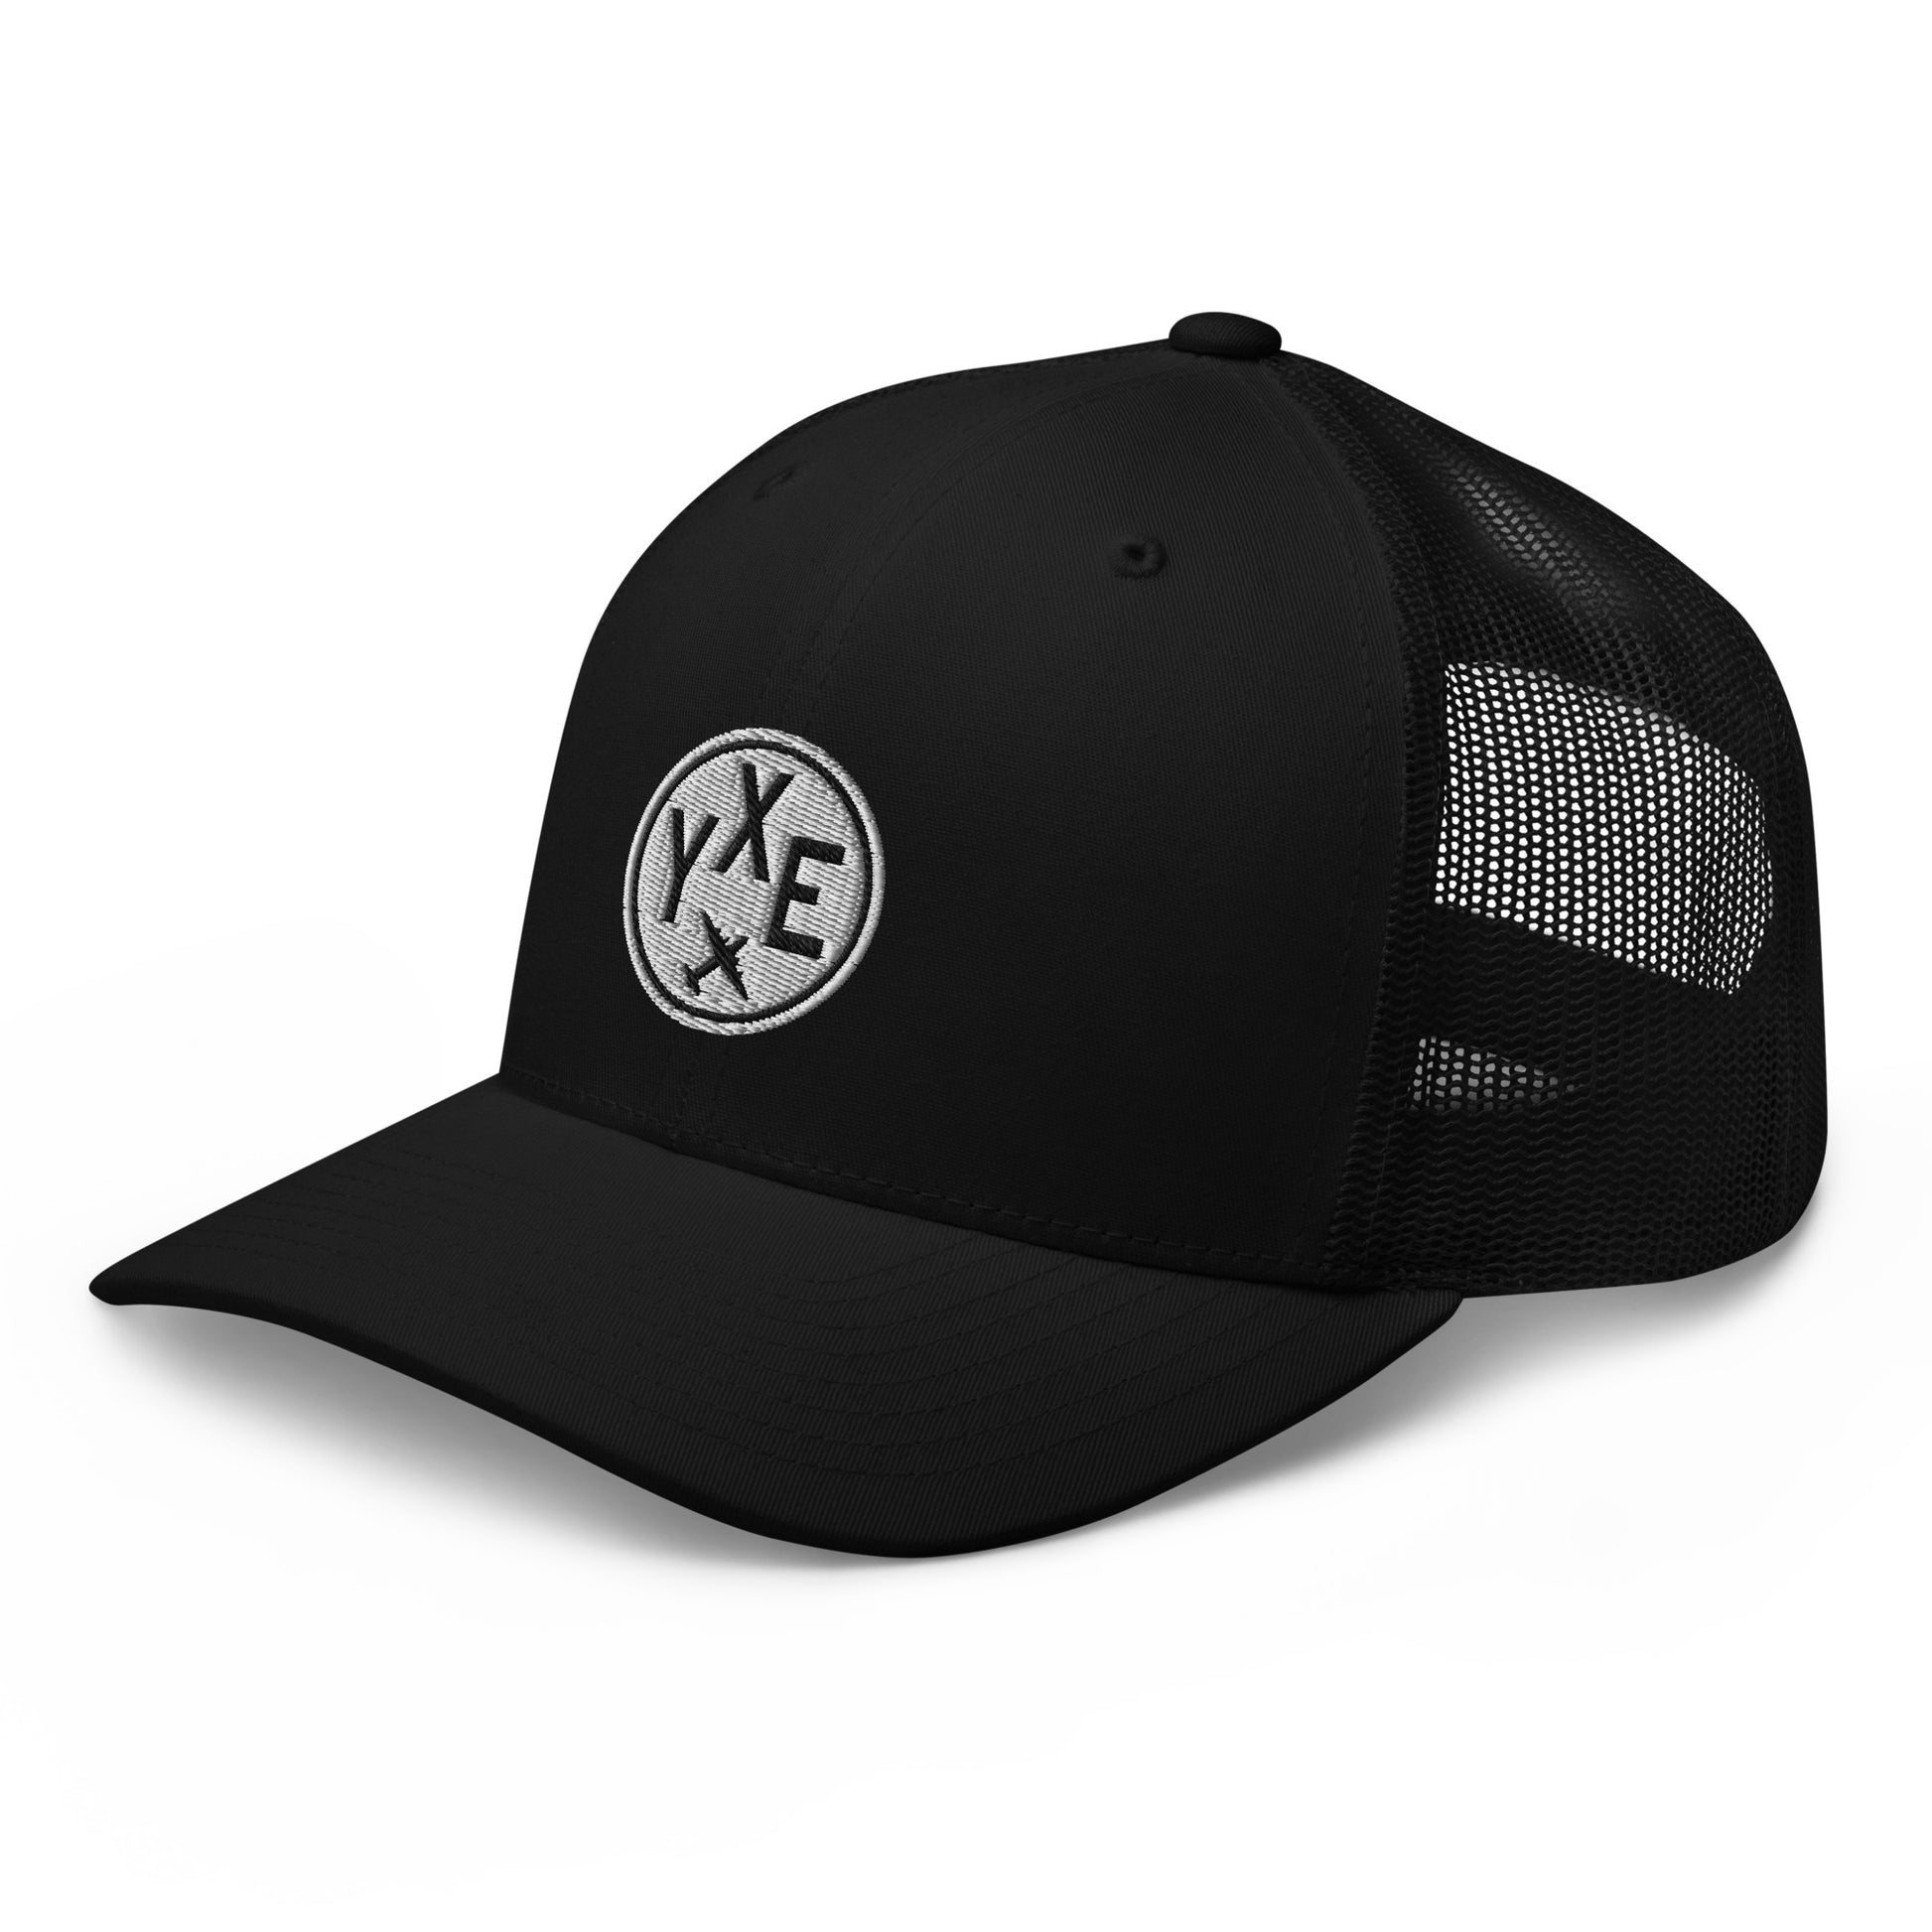 Roundel Trucker Hat - Black & White • YXE Saskatoon • YHM Designs - Image 08